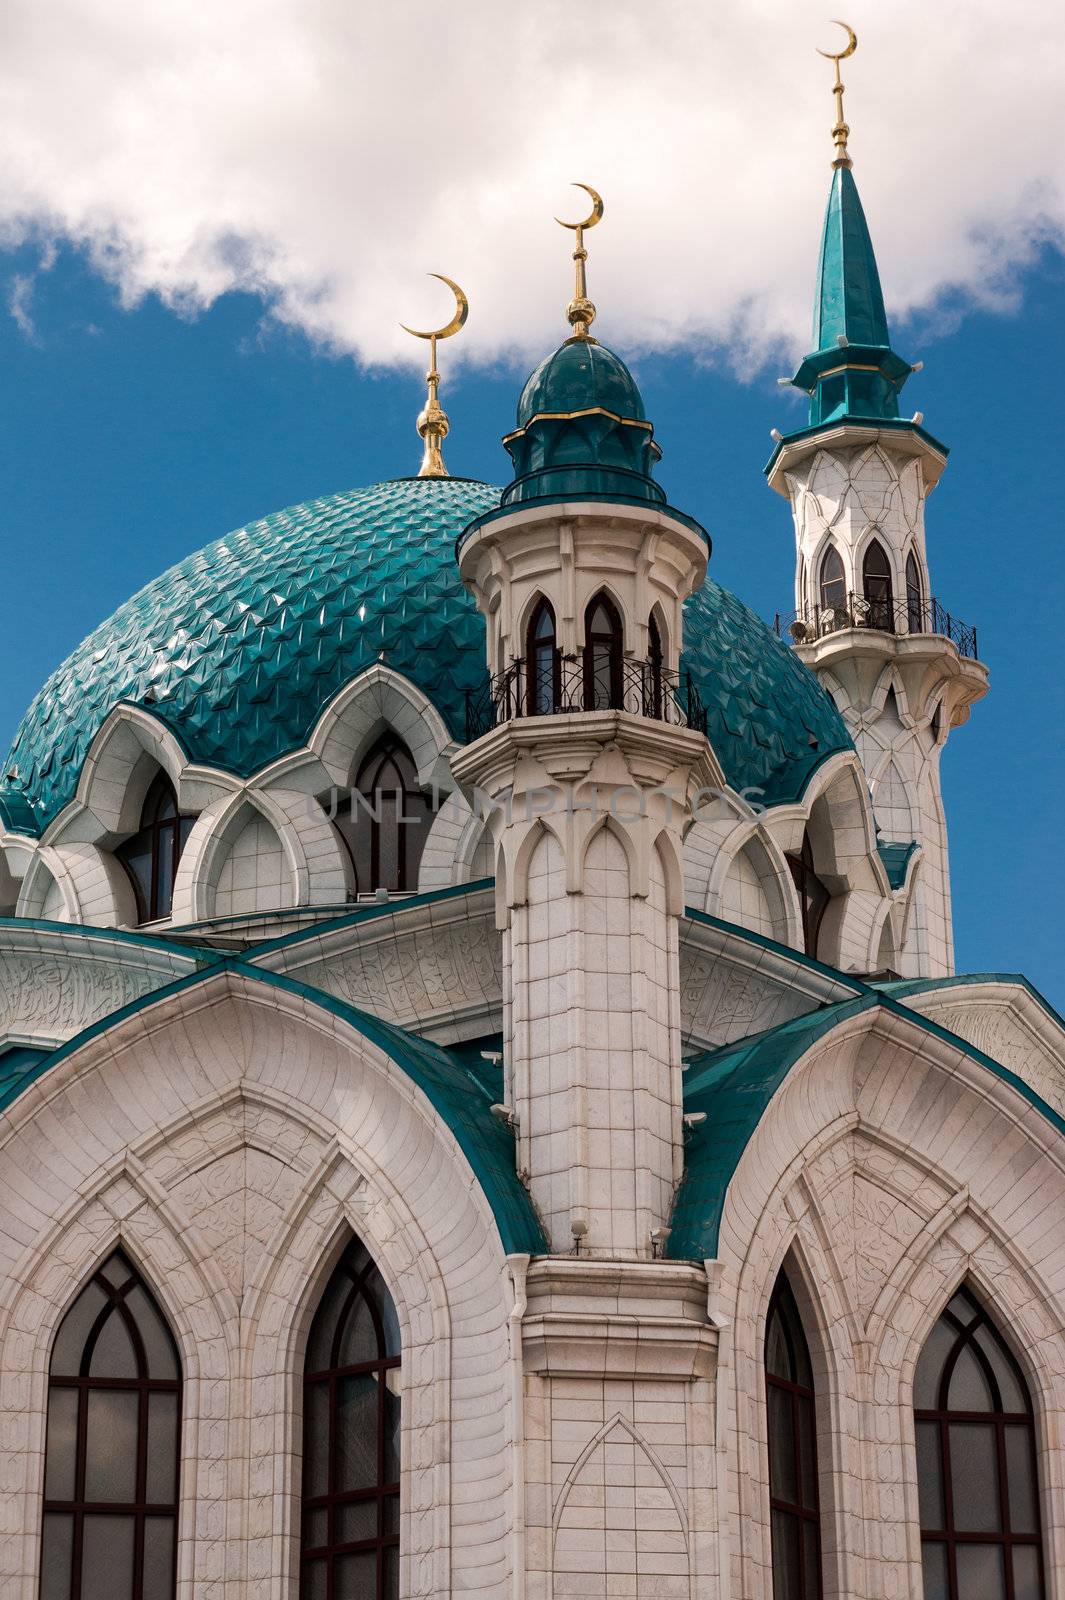 Close detail of the Kul-Sharif Mosque in Kazan (Russia).